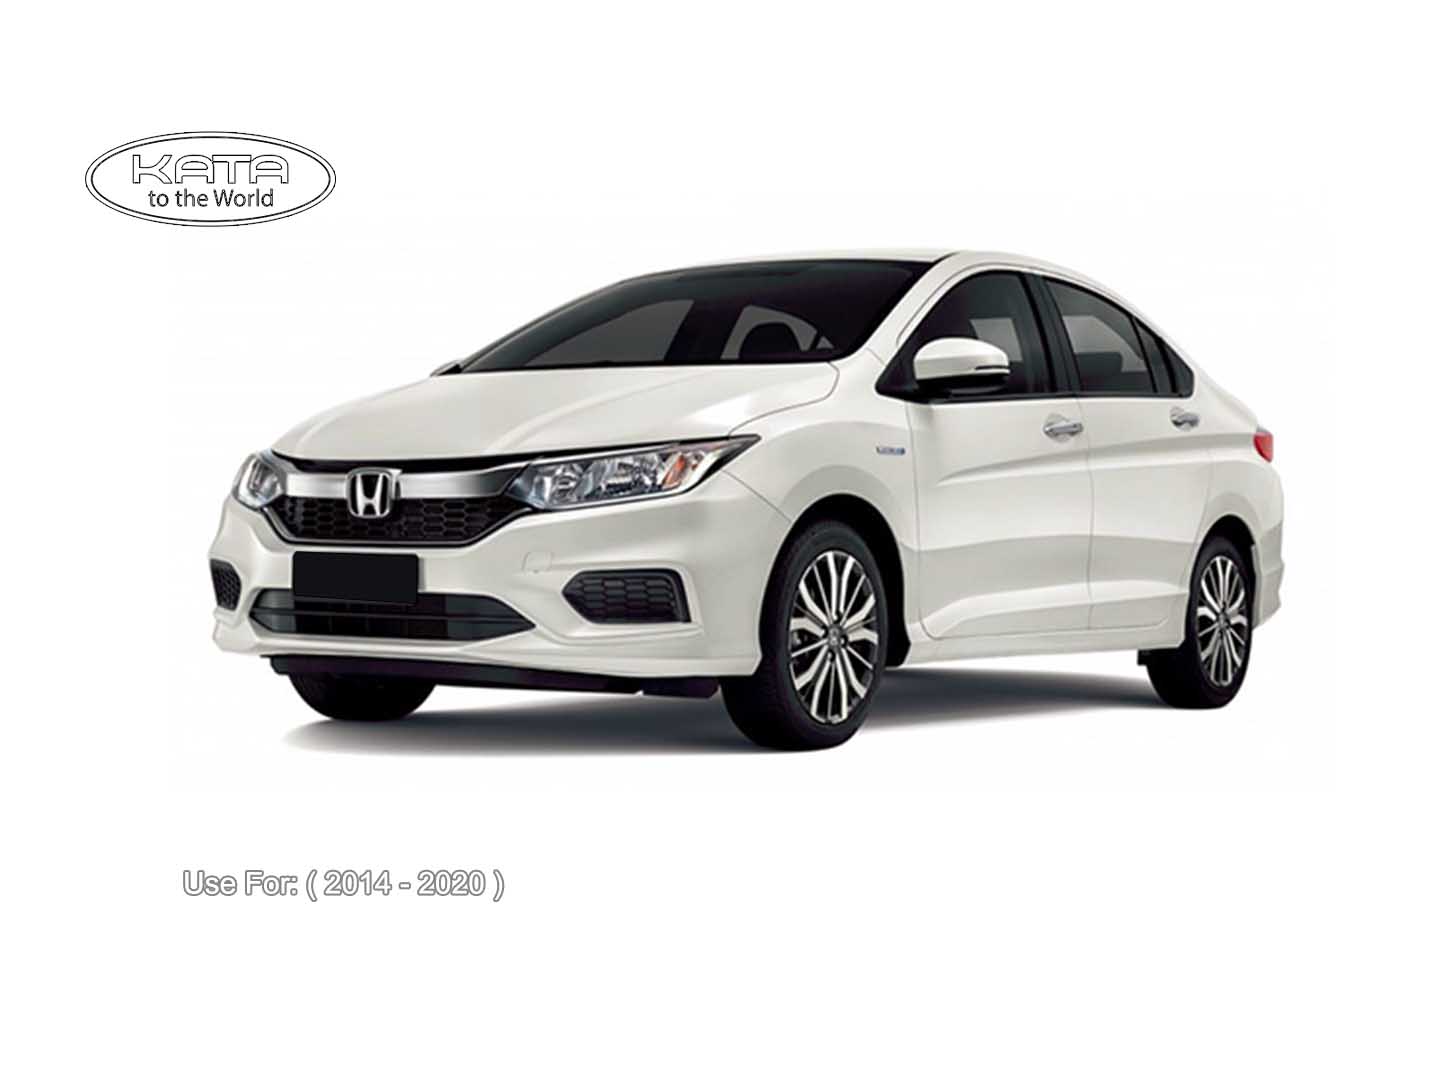 Đánh giá Honda City 2014  sedan hạng B thể thao và tiện dụng